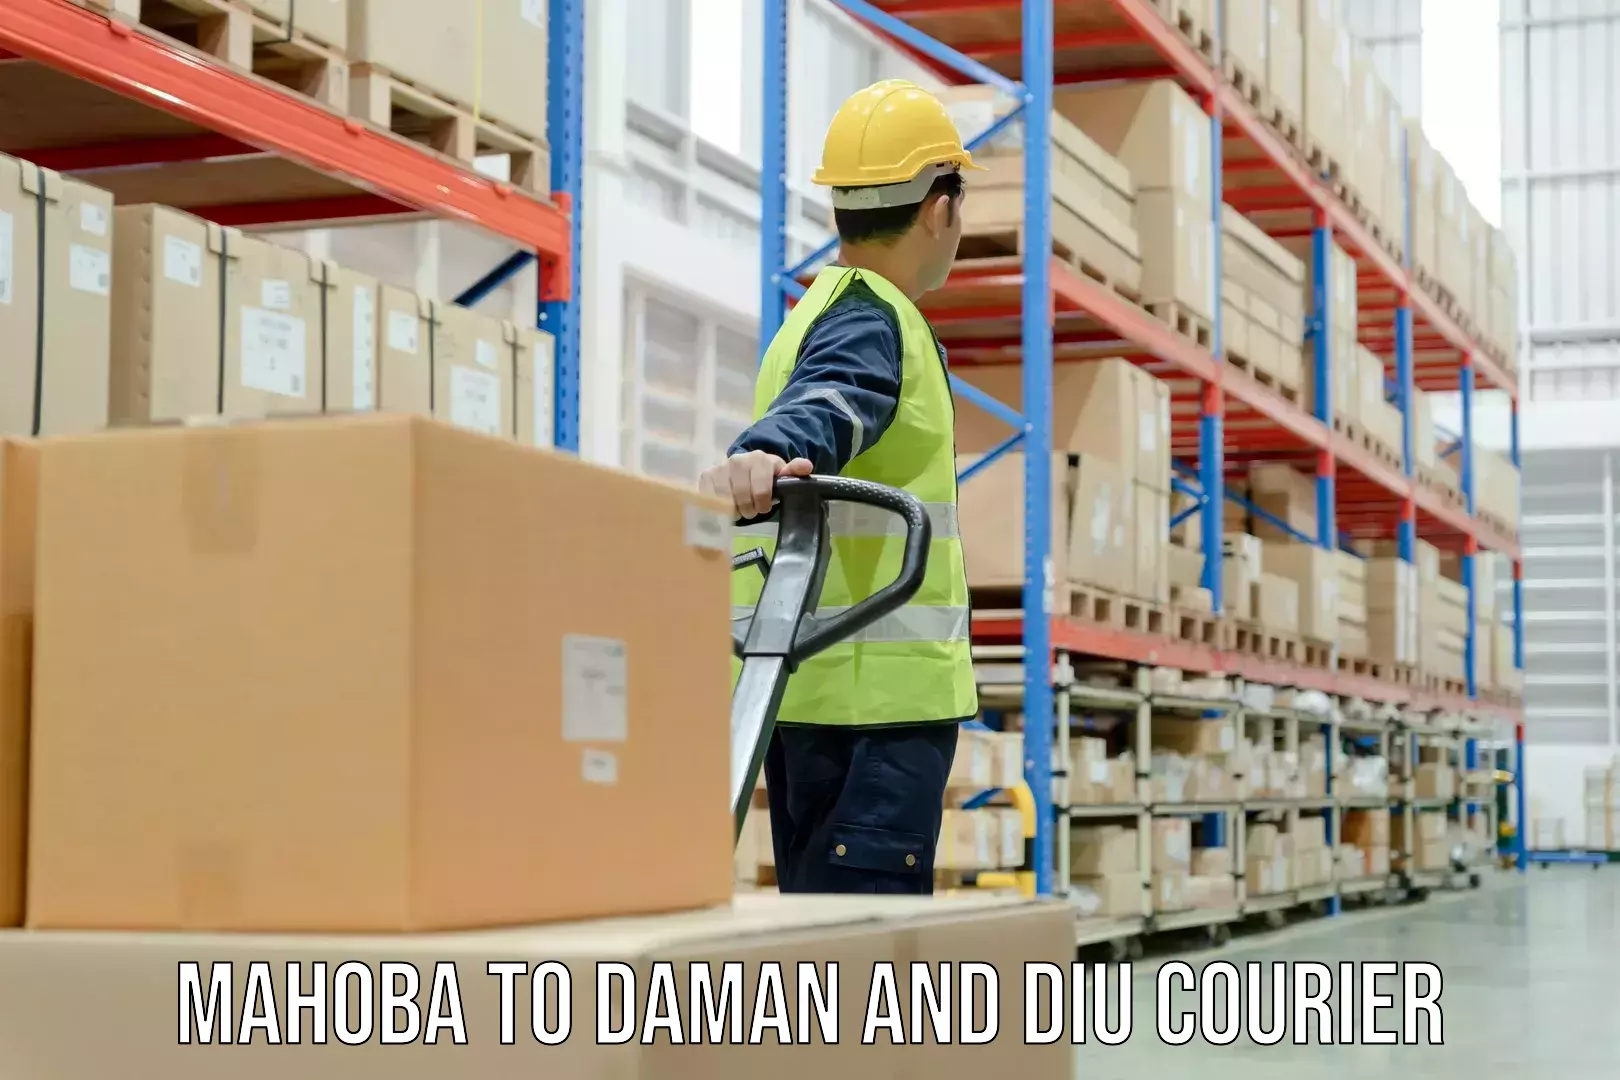 Affordable shipping solutions Mahoba to Diu